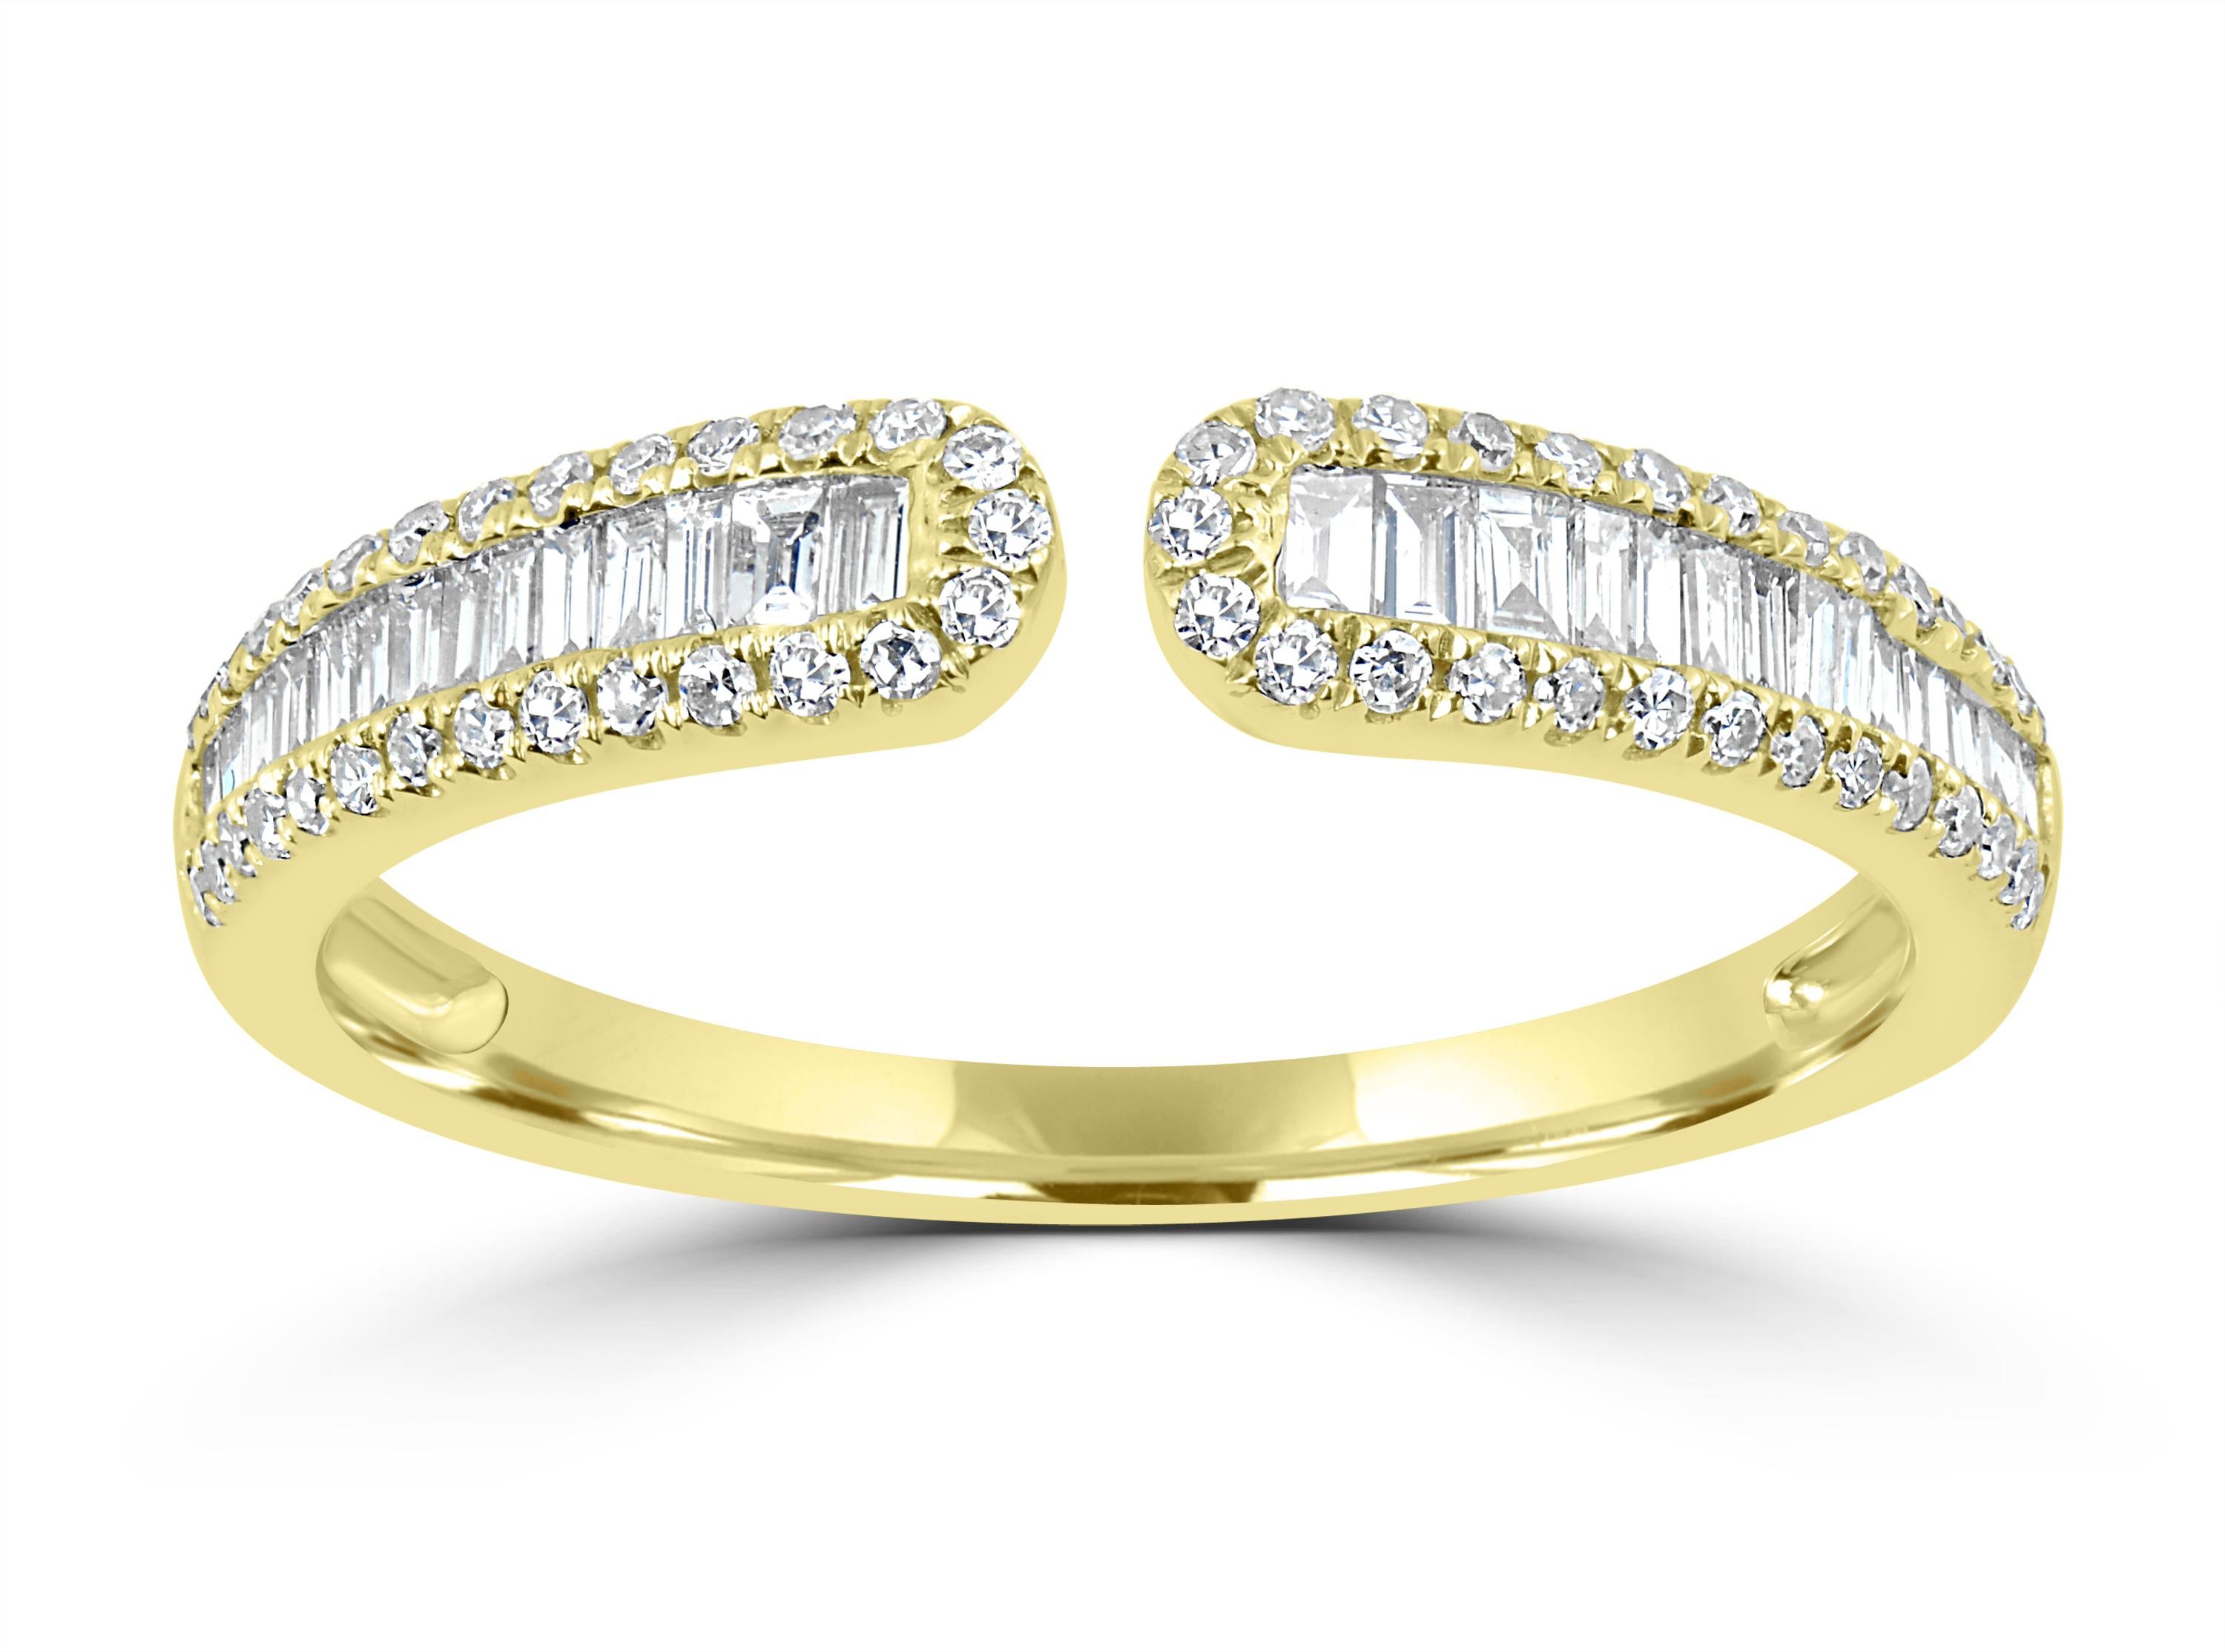 Dieser wunderschöne Ring schimmert mit Baguetten, die auf beiden Seiten von Pflasterdiamanten eingerahmt sind  aus 14-karätigem Gelbgold, die diesem Stück eine elegante Ausstrahlung verleihen, die Sie lieben werden.

SCHMUCK-SPEZIFIKATION:
Ungefähr.